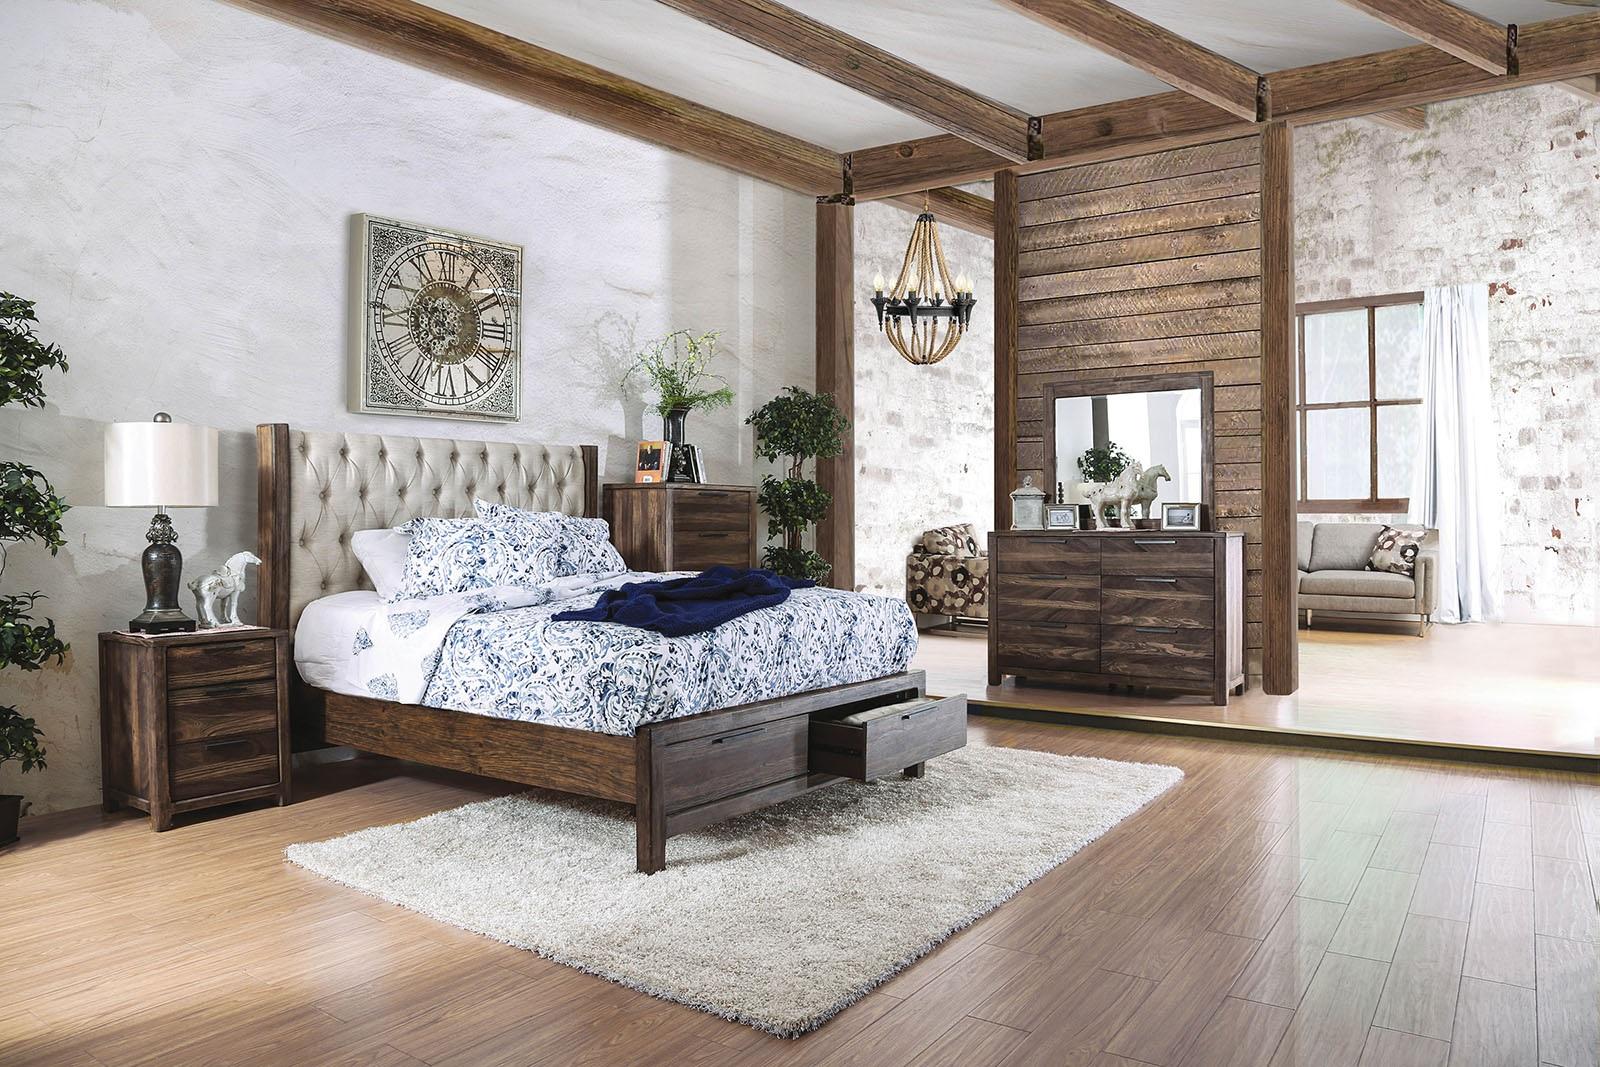 

    
CM7577DR-EK-3PC Rustic Natural & Beige Solid Wood King Bedroom Set 3pcs Furniture of America CM7577DR-EK Hutchinson
